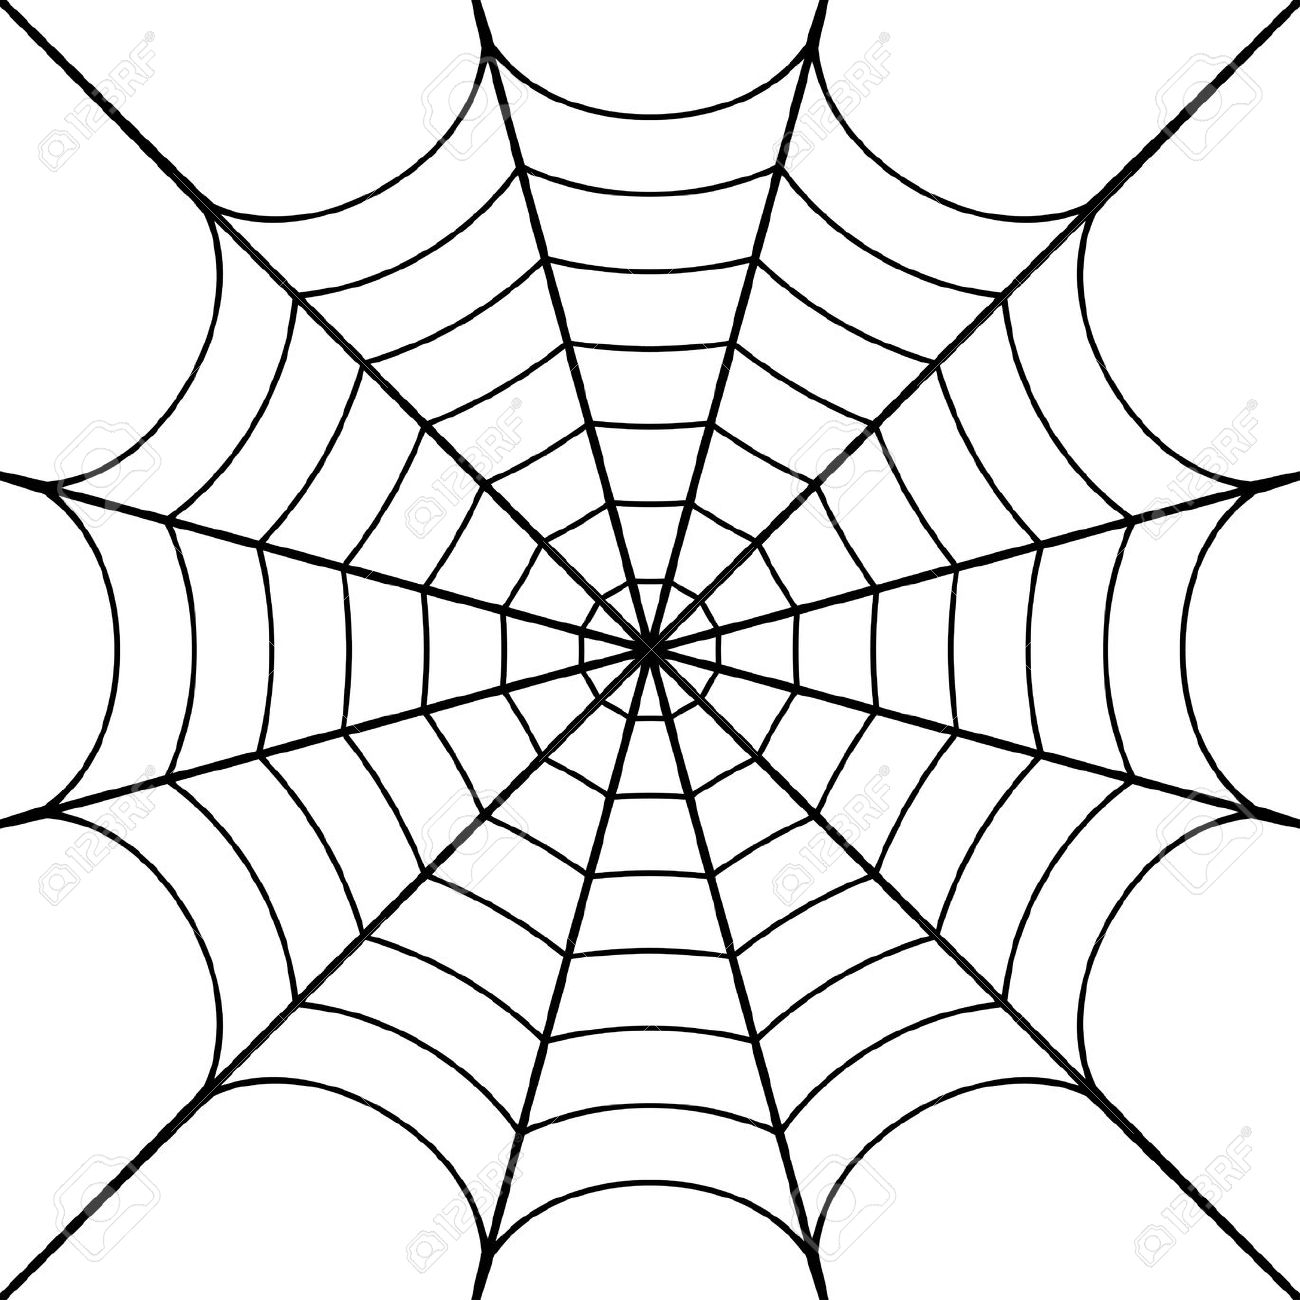 Spider web corner cobweb clip